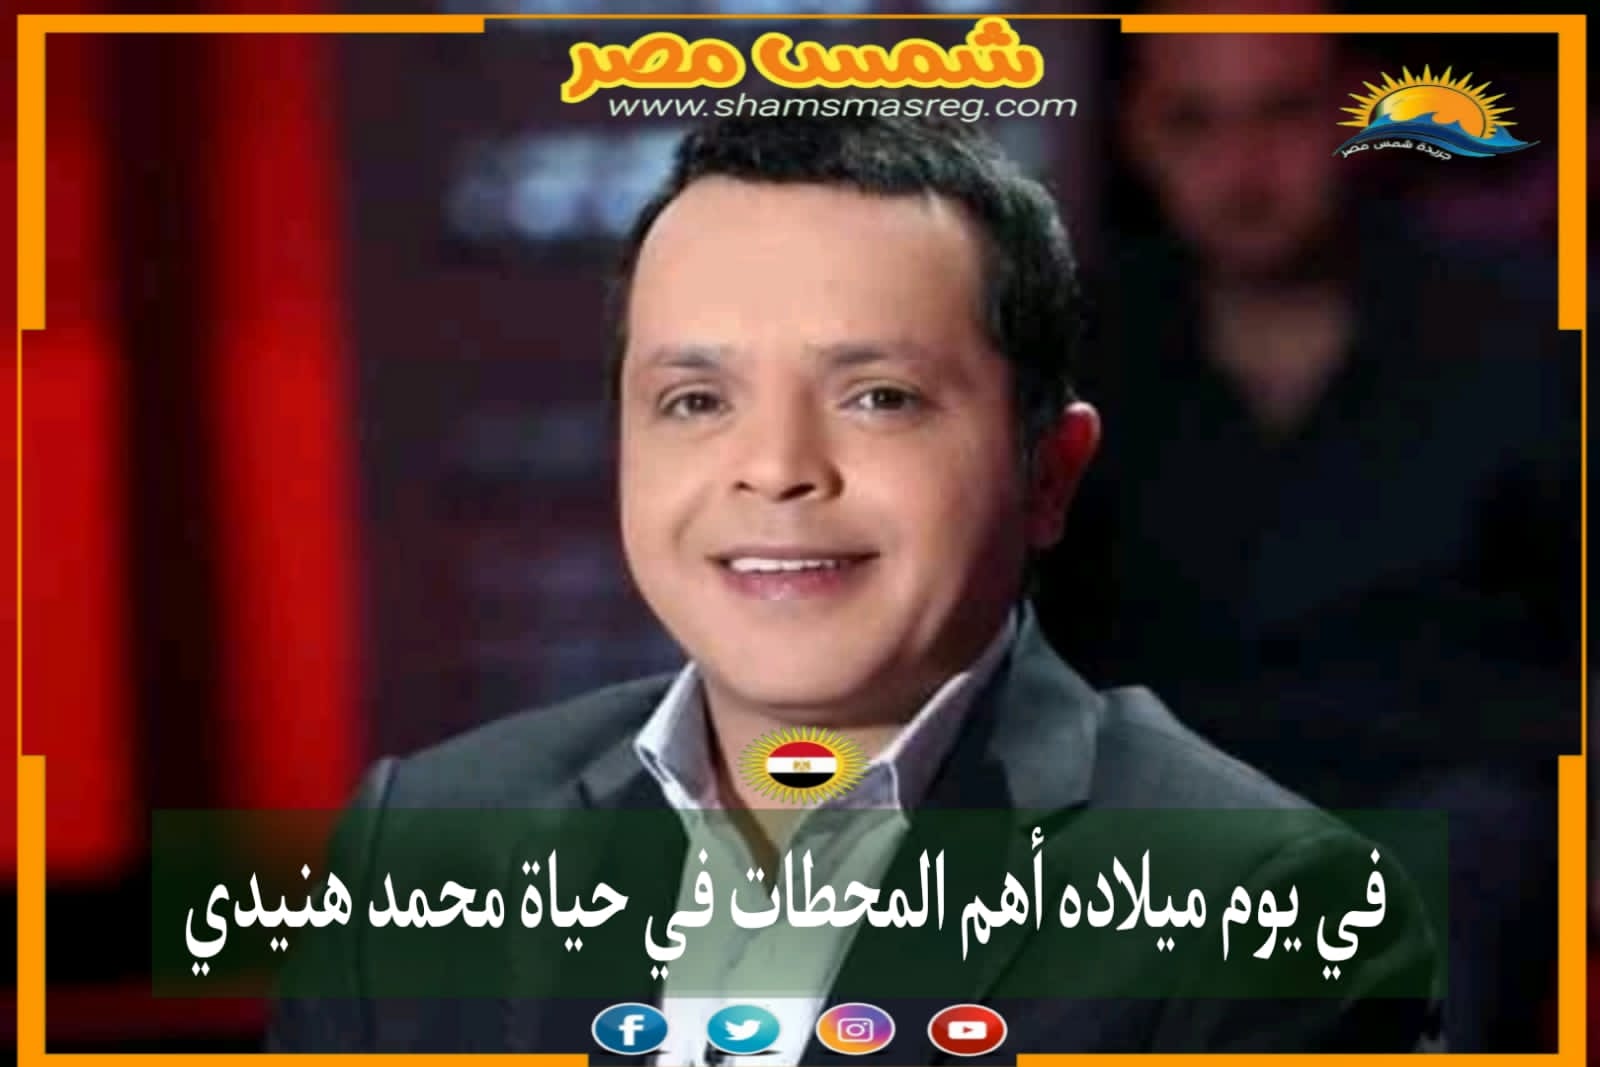 |شمس مصر|.. في يوم ميلاده أهم المحطات في حياة محمد هنيدي